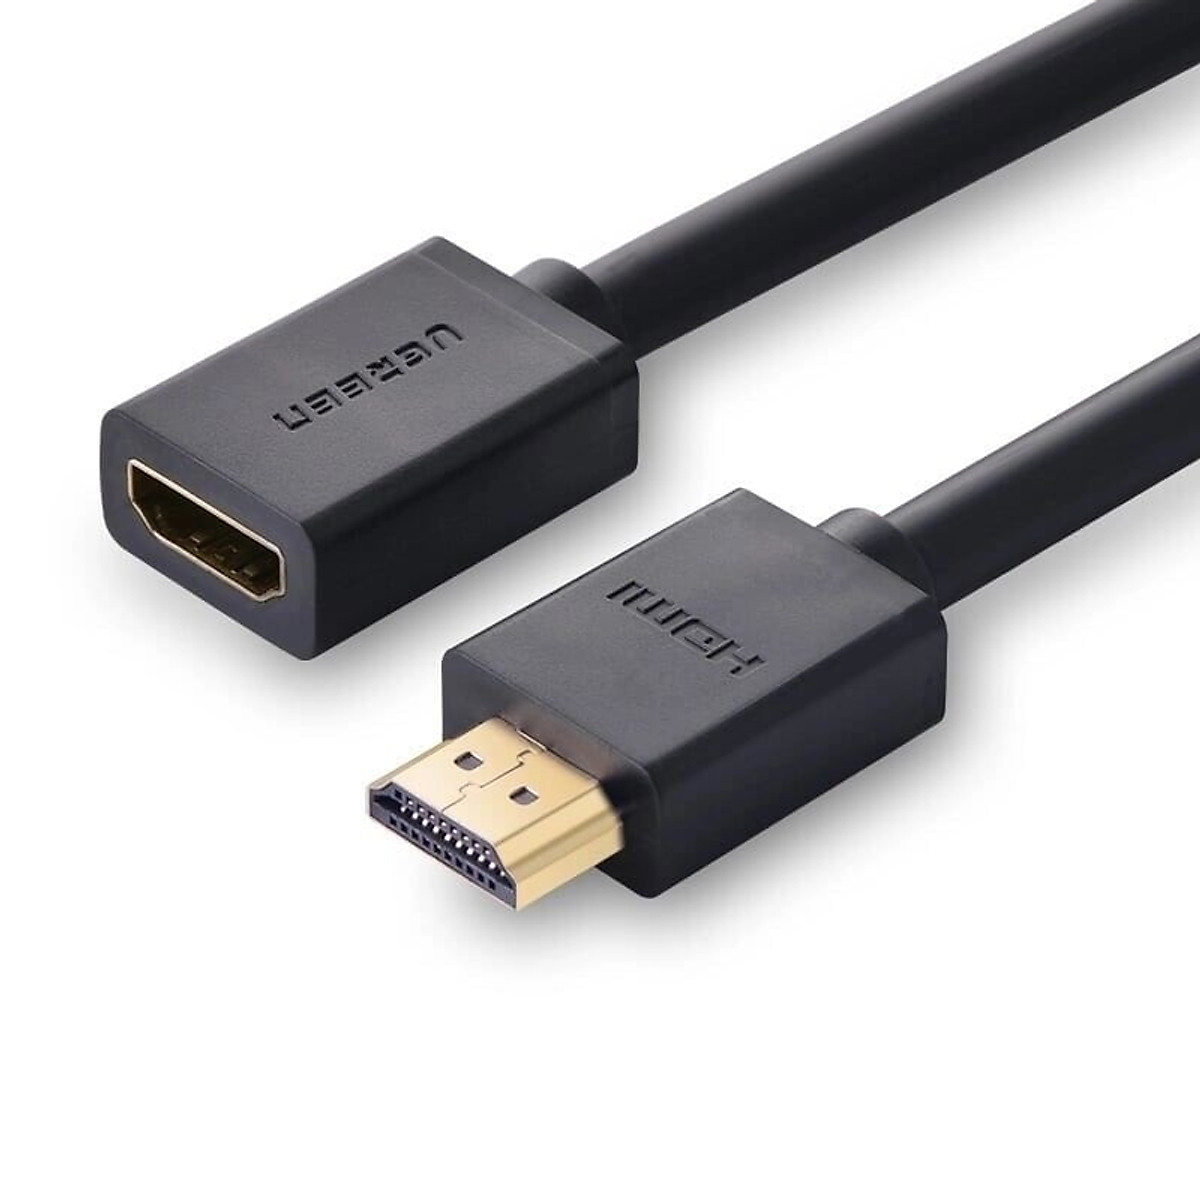 Cáp HDMI màu đen 4k: Trải nghiệm chất lượng hình ảnh tuyệt vời với cáp HDMI màu đen 4K. Với tốc độ truyền tải thông tin cao và khả năng hỗ trợ độ phân giải 4K, bạn có thể thoải mái thưởng thức những bộ phim, video game hay hình ảnh chất lượng cao một cách rõ nét và sắc sảo. Bên cạnh đó, kết nối đơn giản và dễ dàng sử dụng là những lợi ích mà bạn sẽ nhận được từ sản phẩm này.